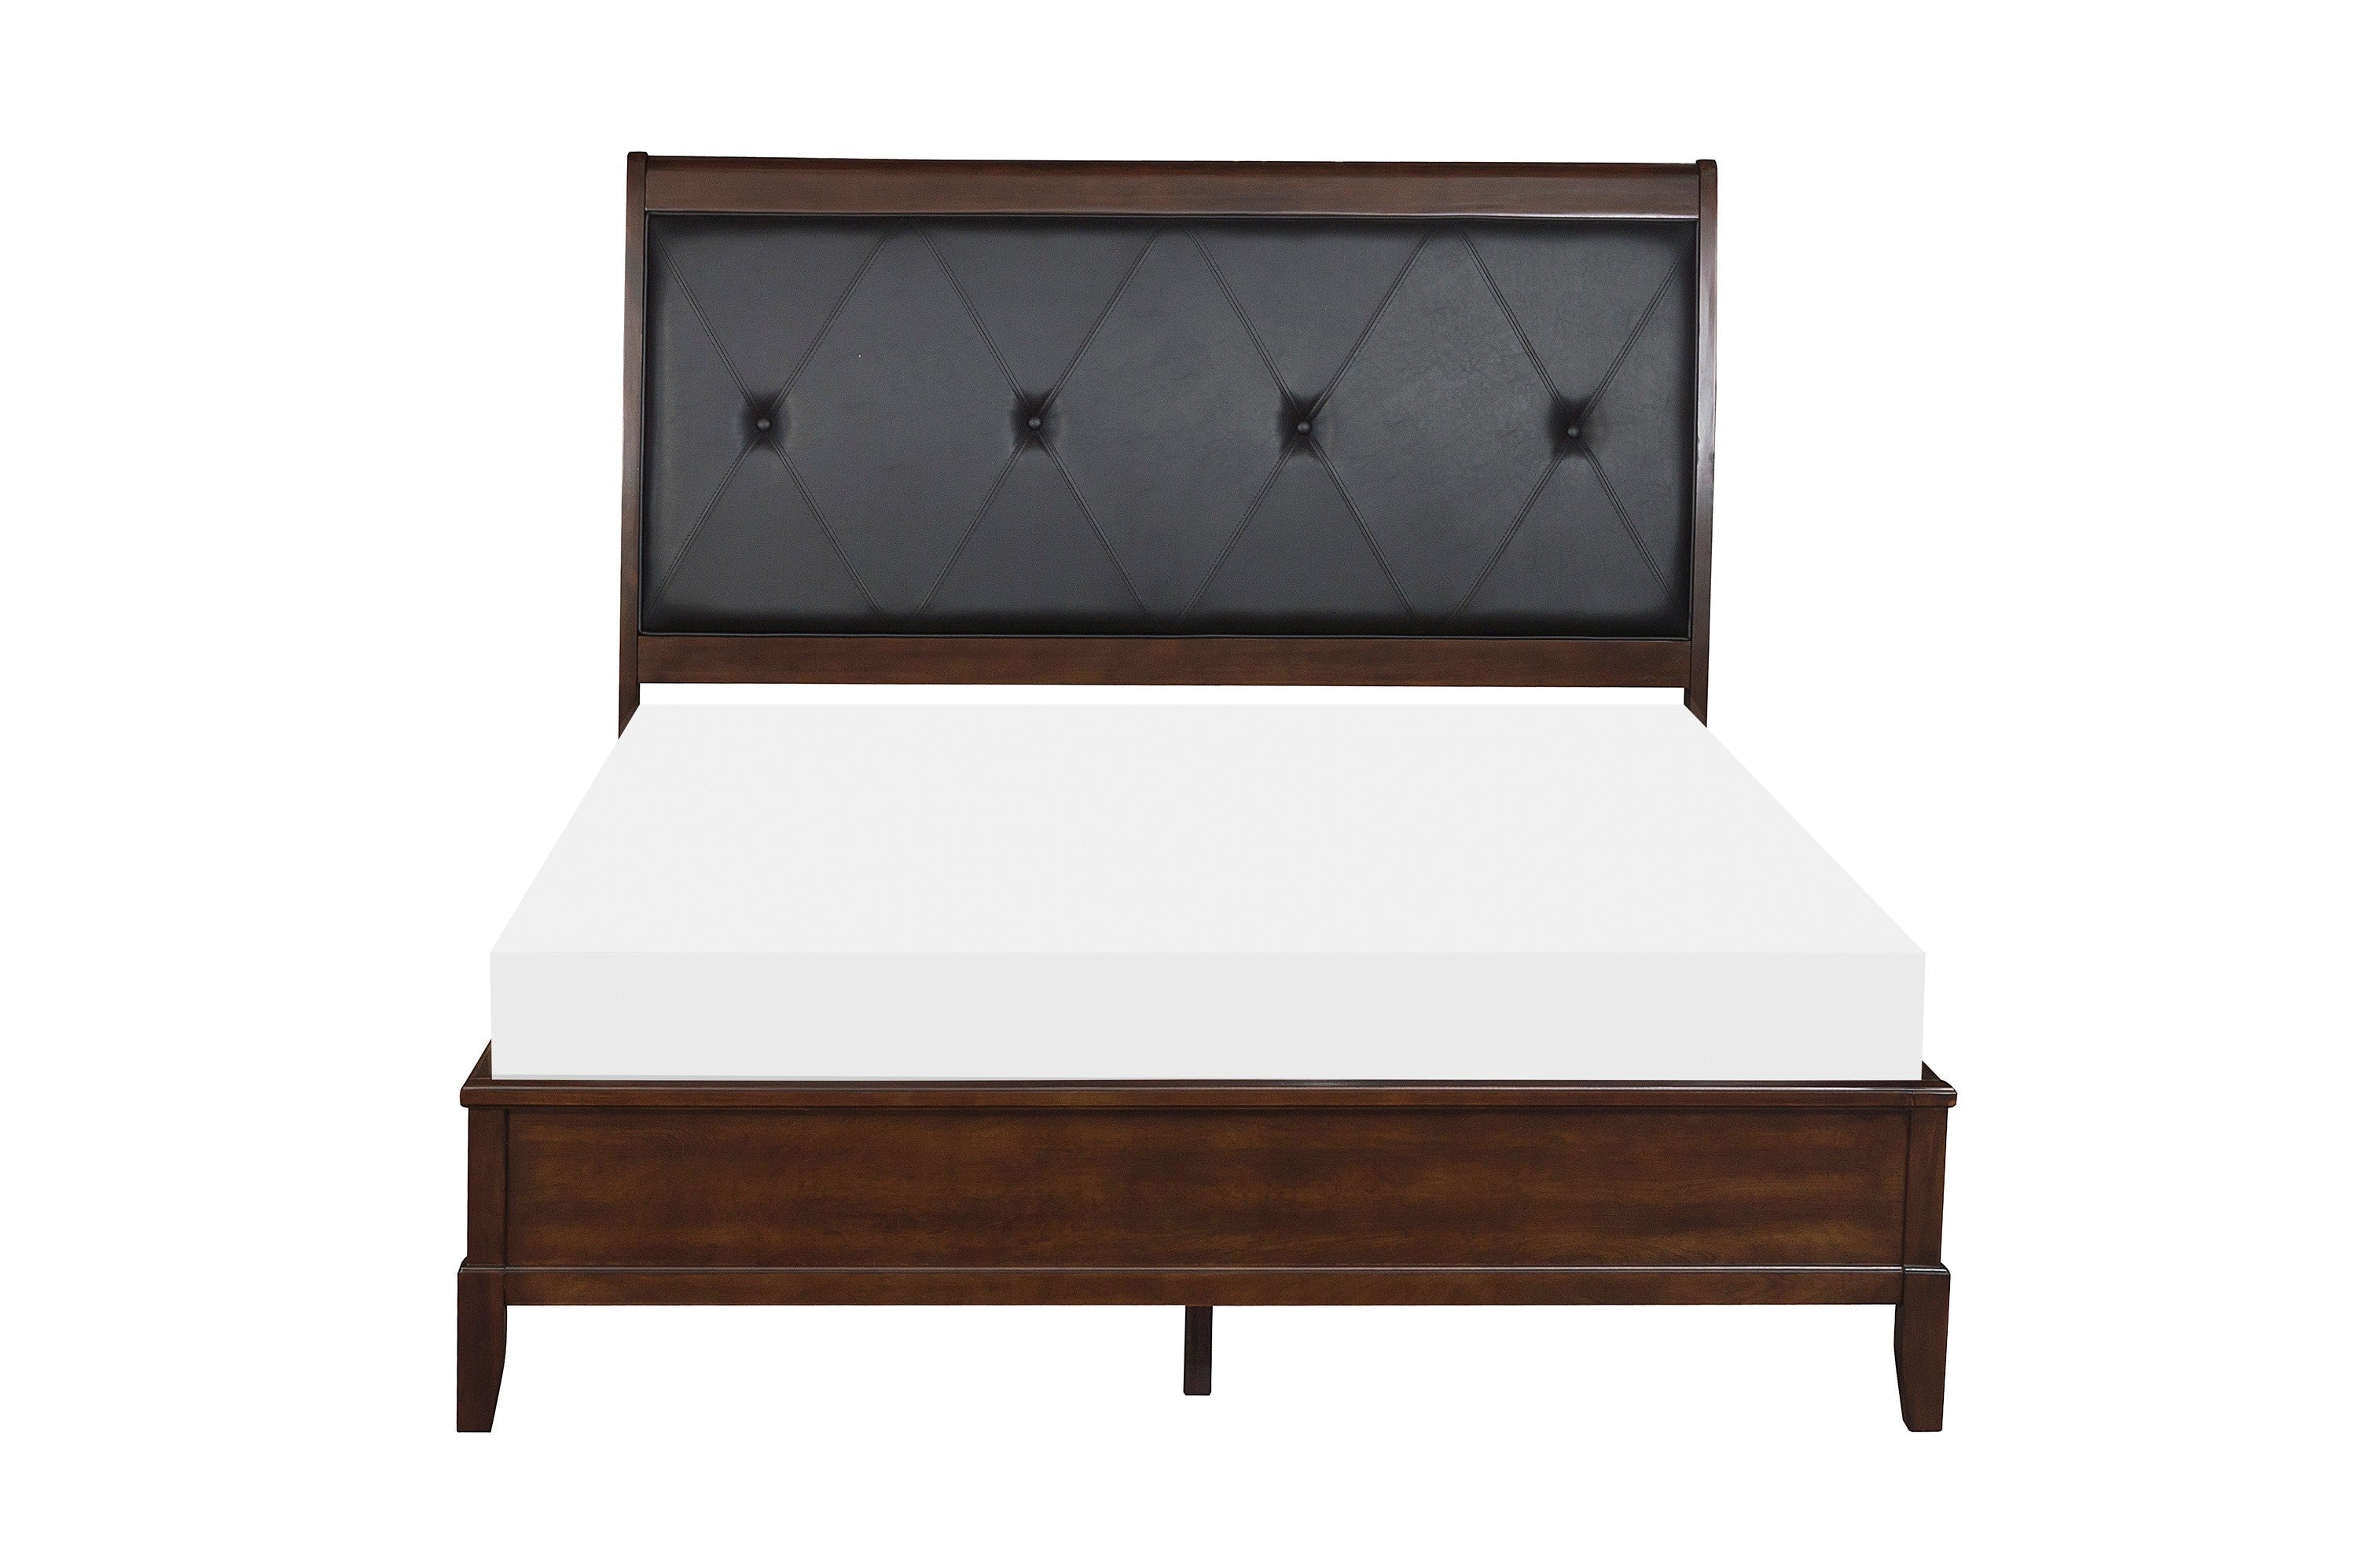 Cotterill Cherry Upholstered Panel Bedroom Set - SET | 1730-1 | 1730-2 | 1730-3 | 1730-5 | 1730-6 - Bien Home Furniture &amp; Electronics